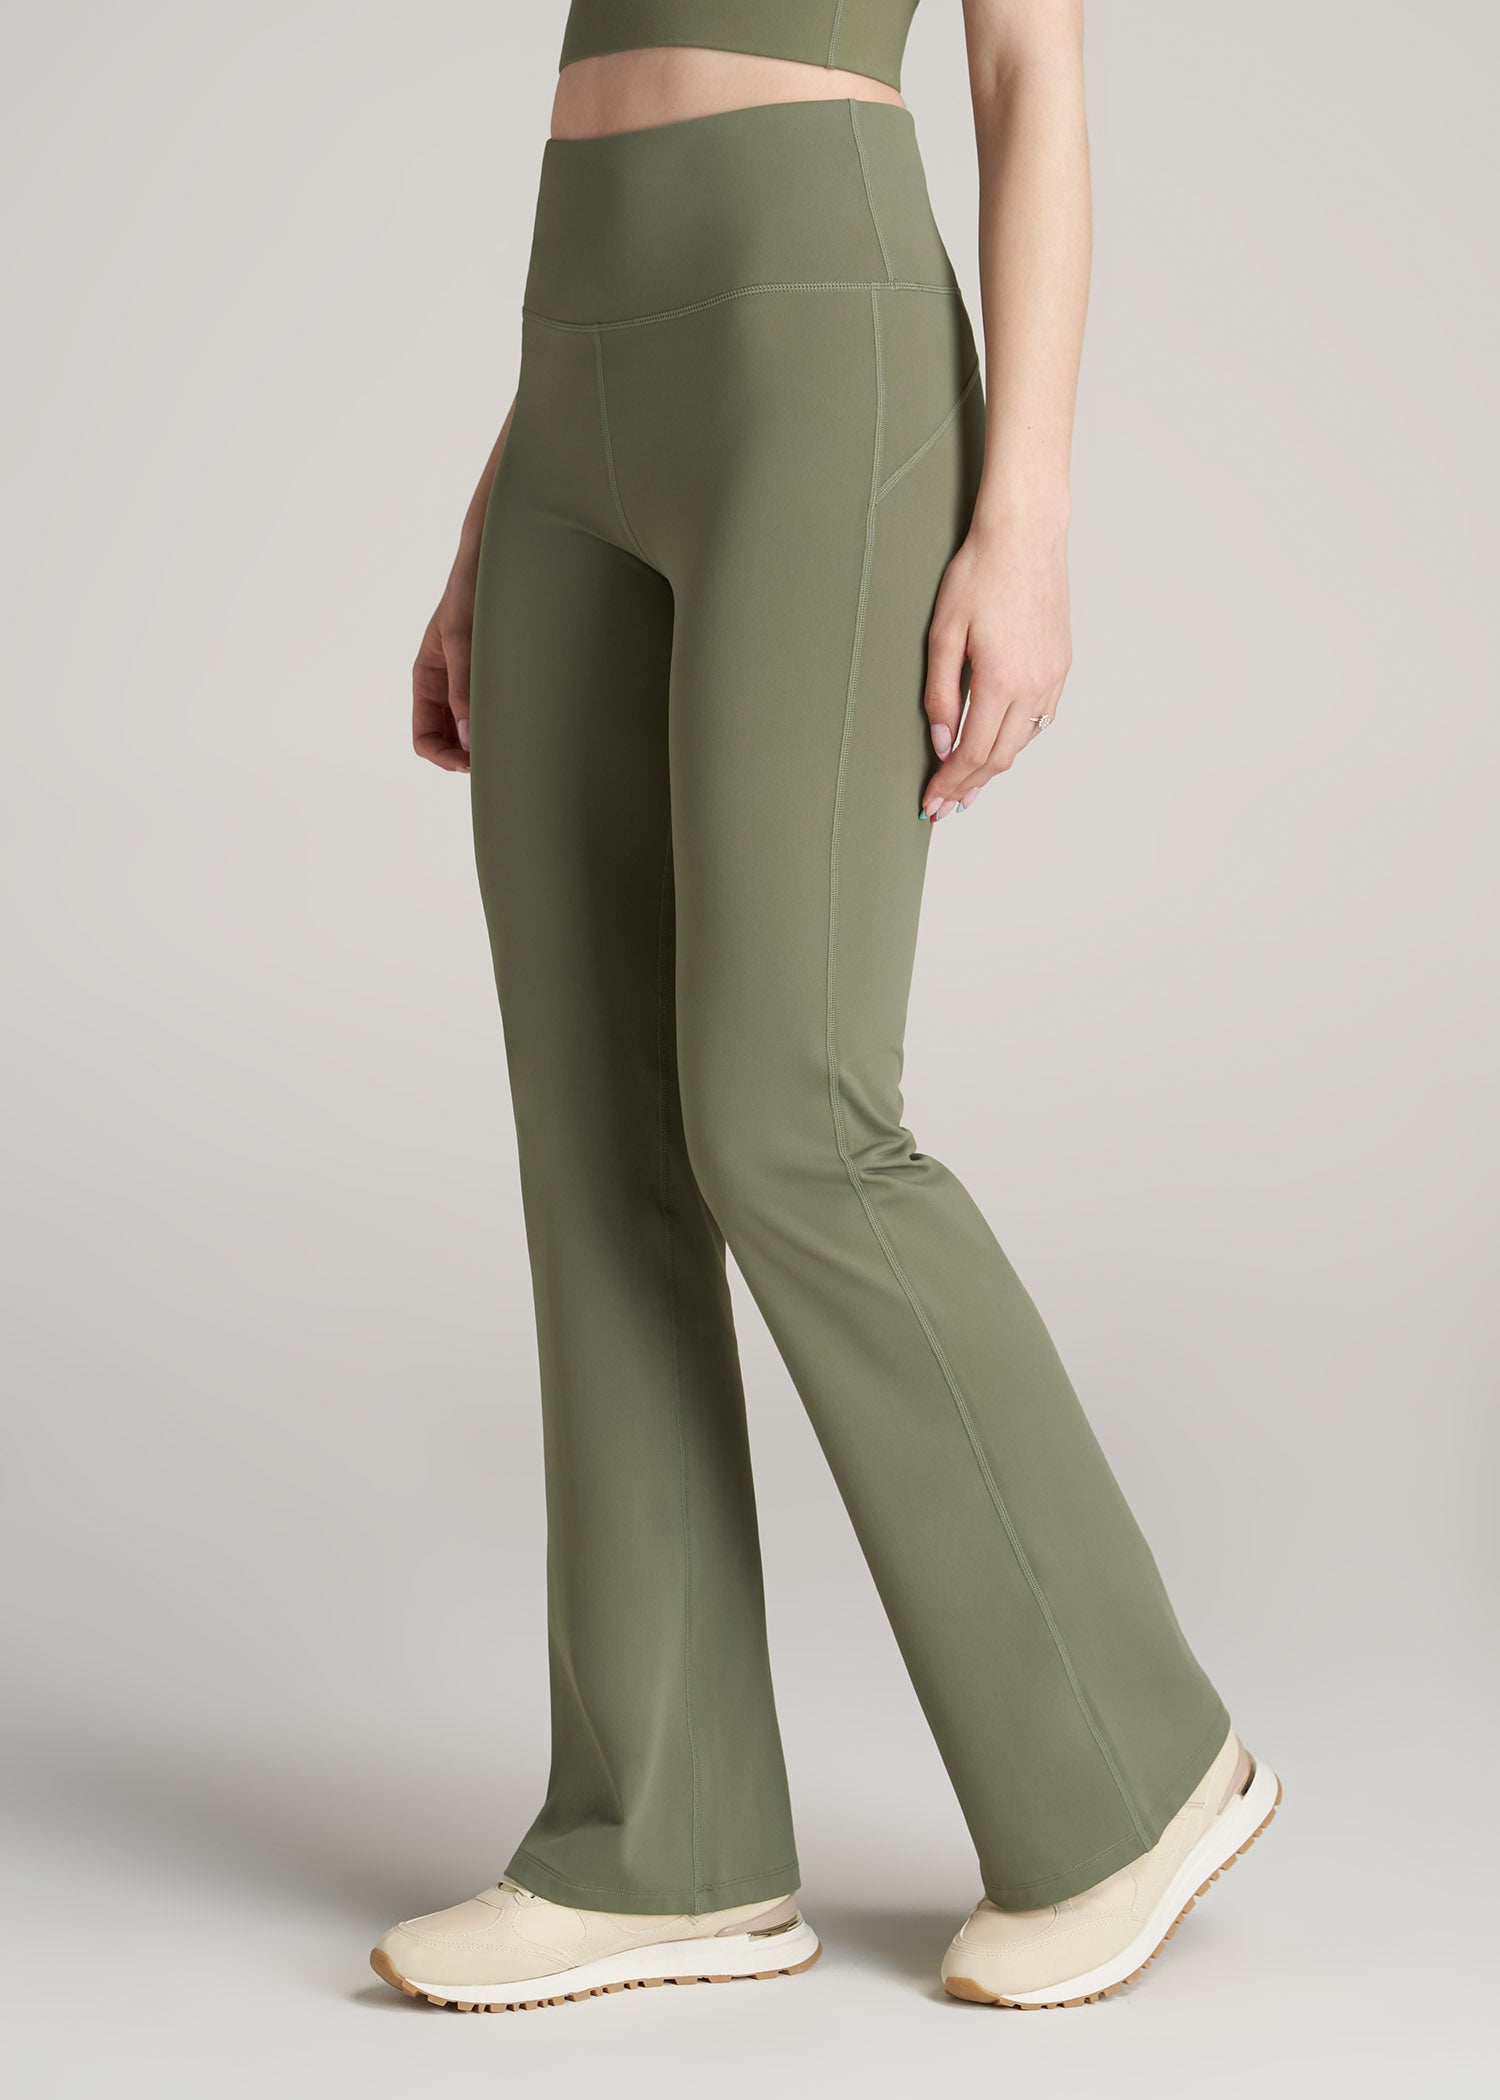 Buy Womens Solid Yoga Pants Medium Dark Olive at Amazonin